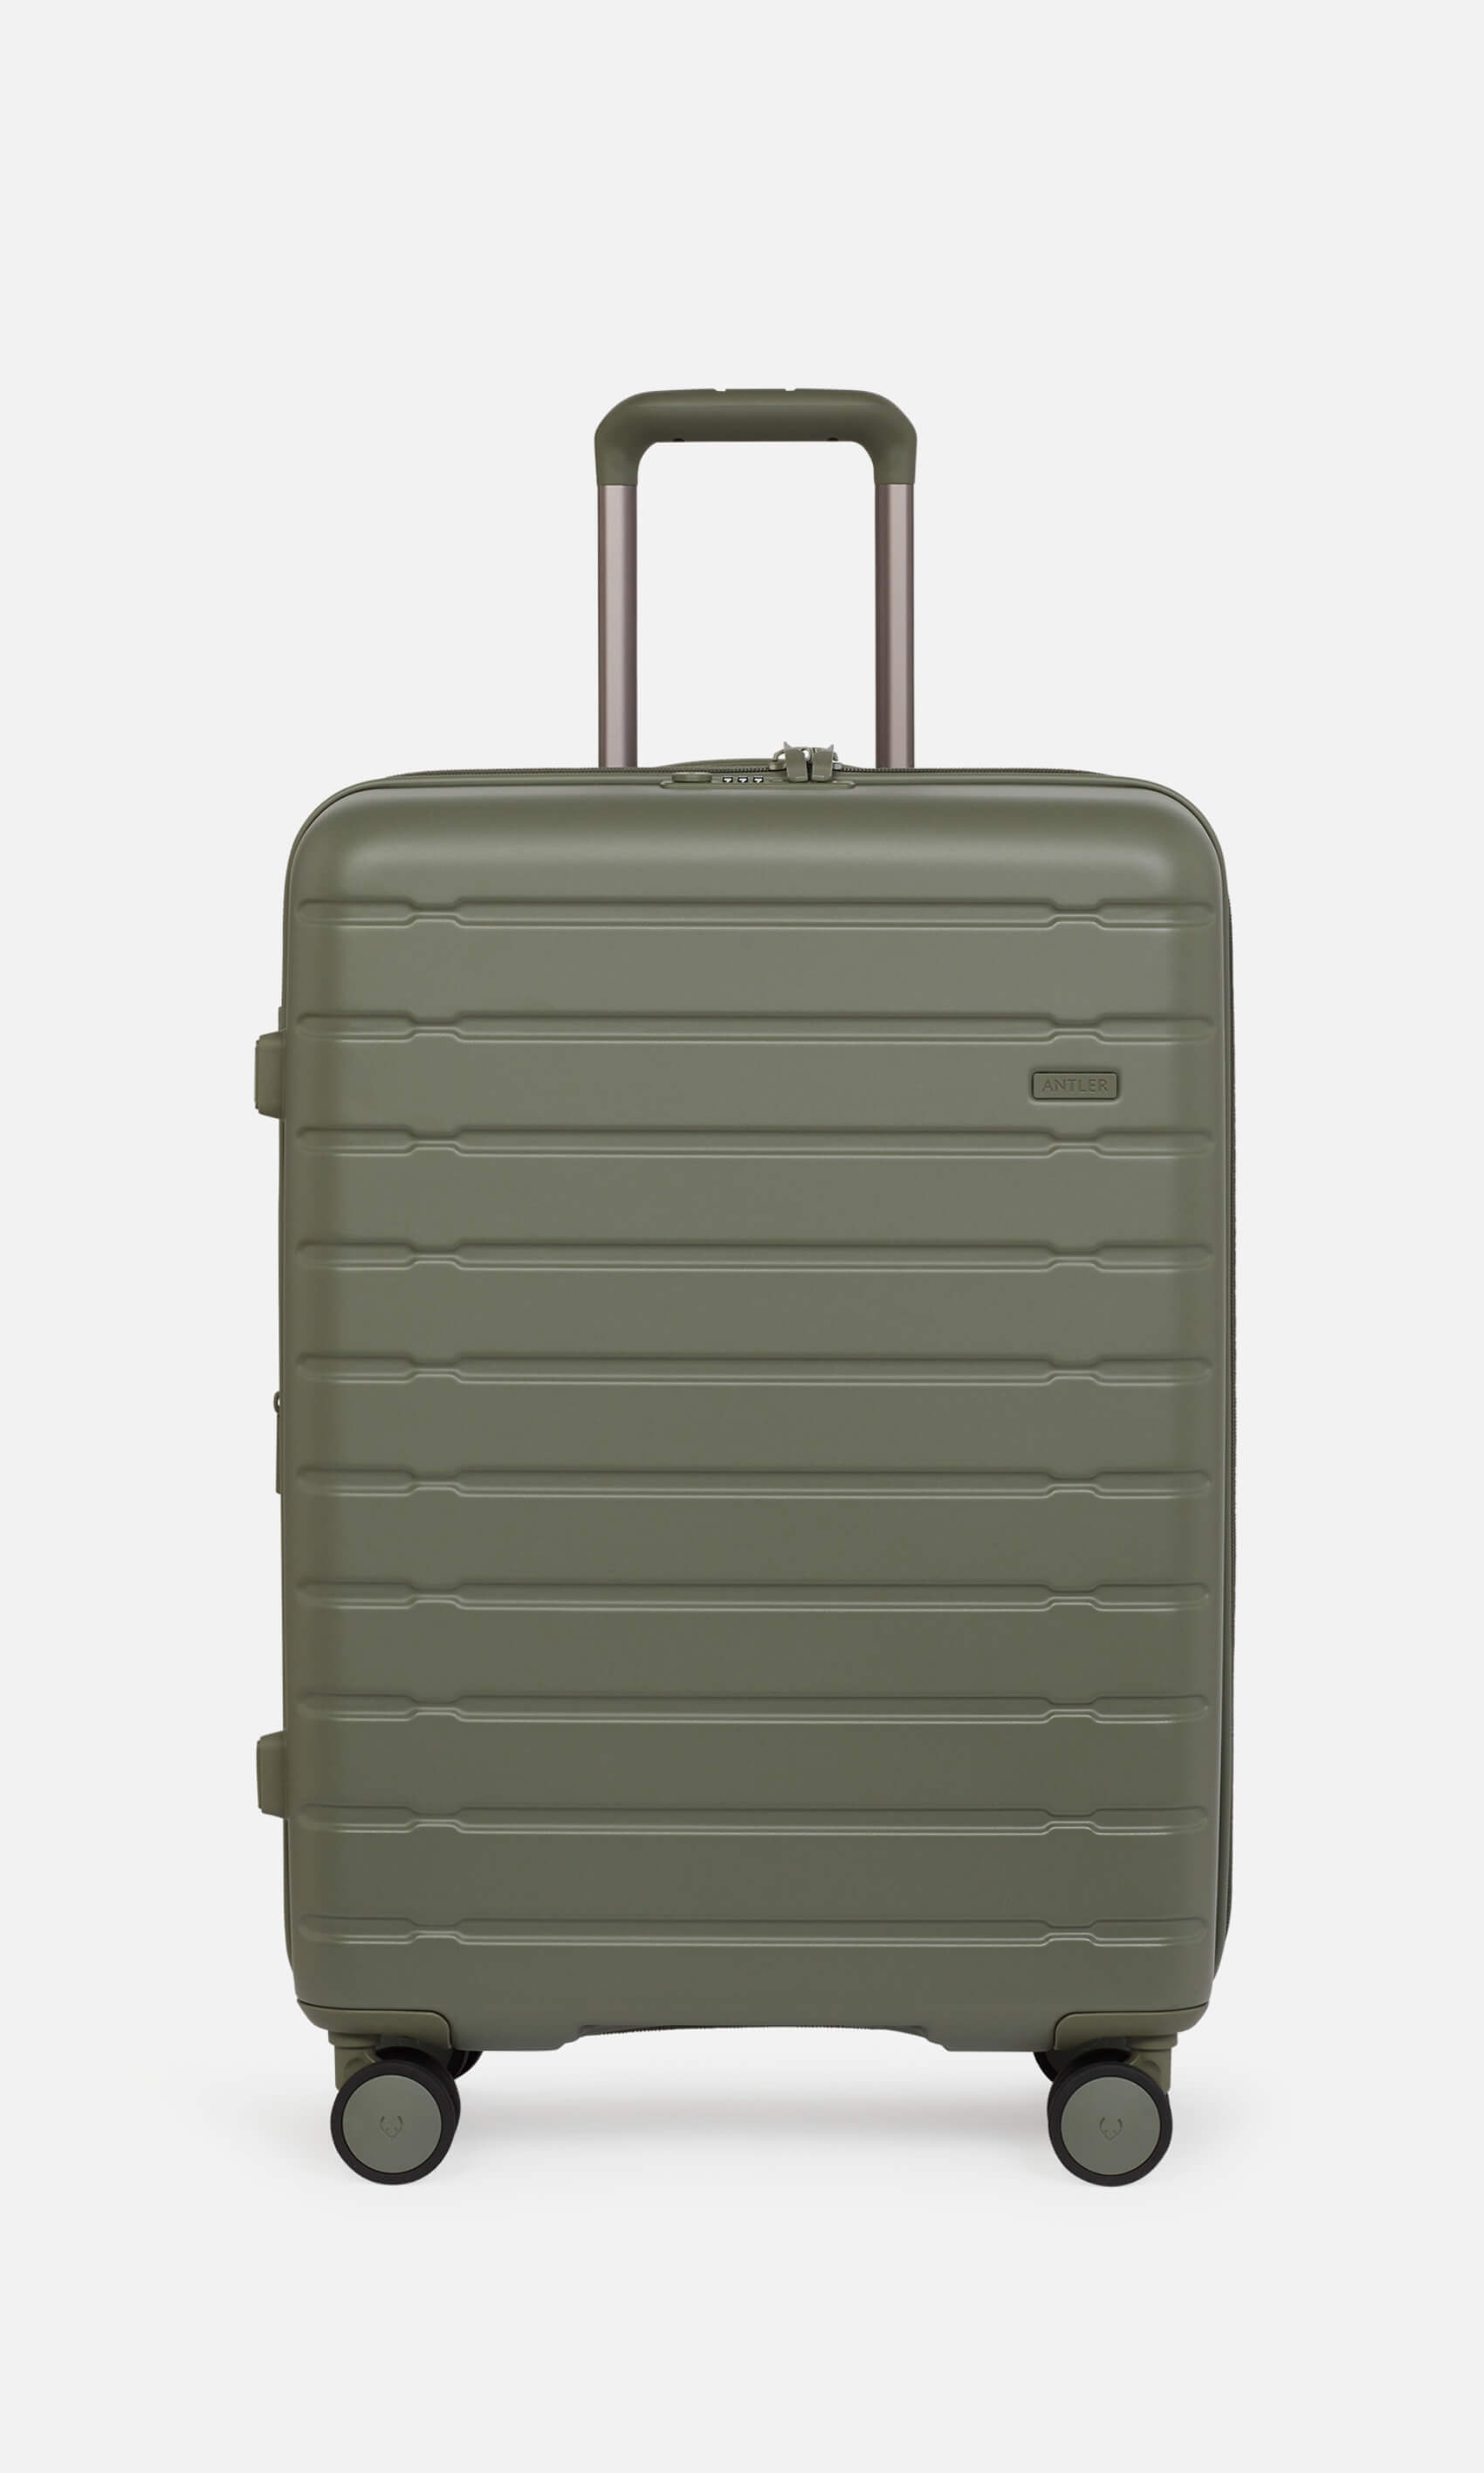 Antler Luggage -  Stamford medium in field green - Hard Suitcases Stamford Medium Suitcase Green | Hard Luggage | Antler UK